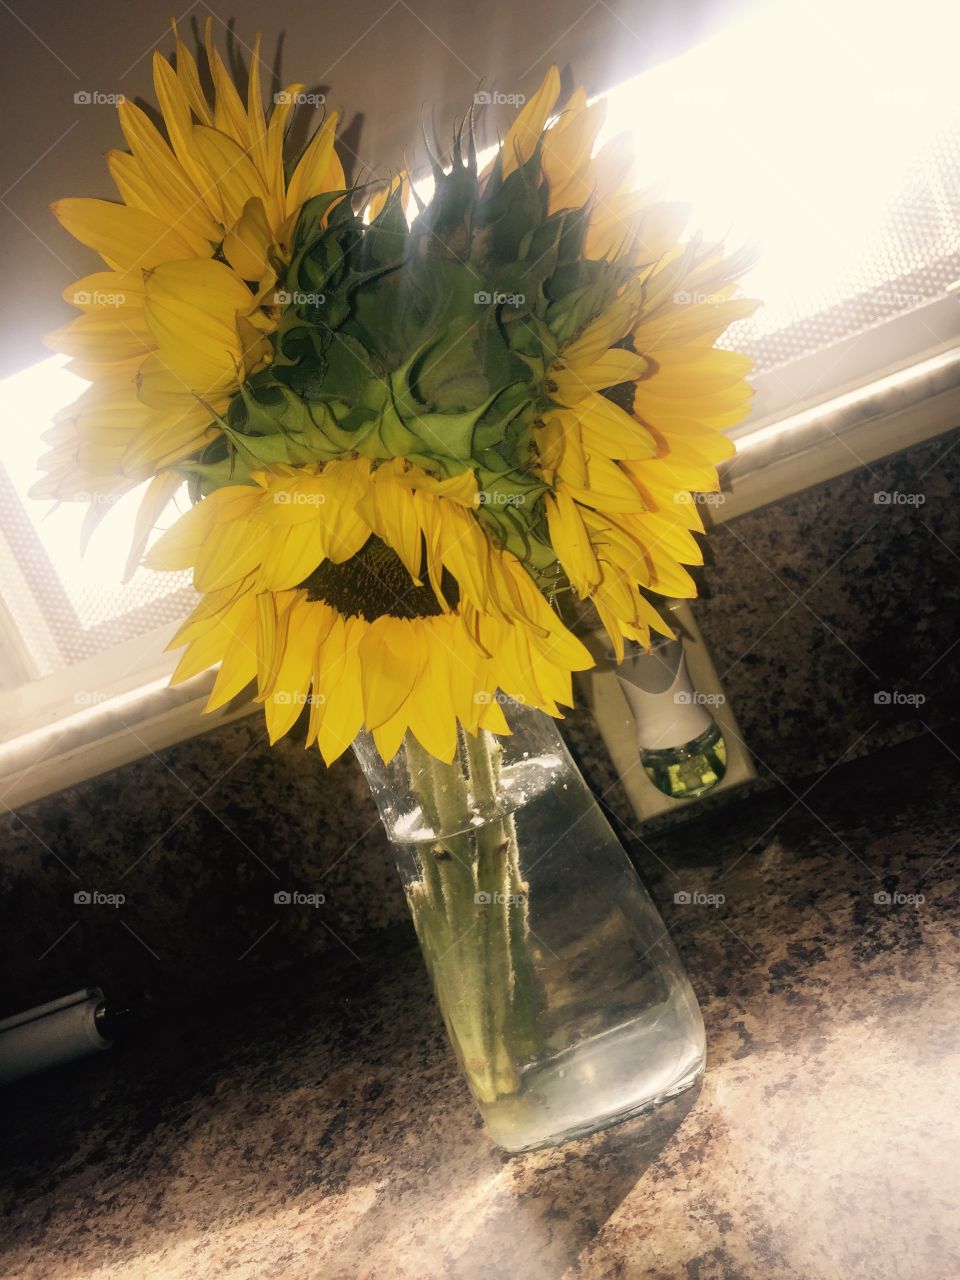 Sunflowers 🌻 